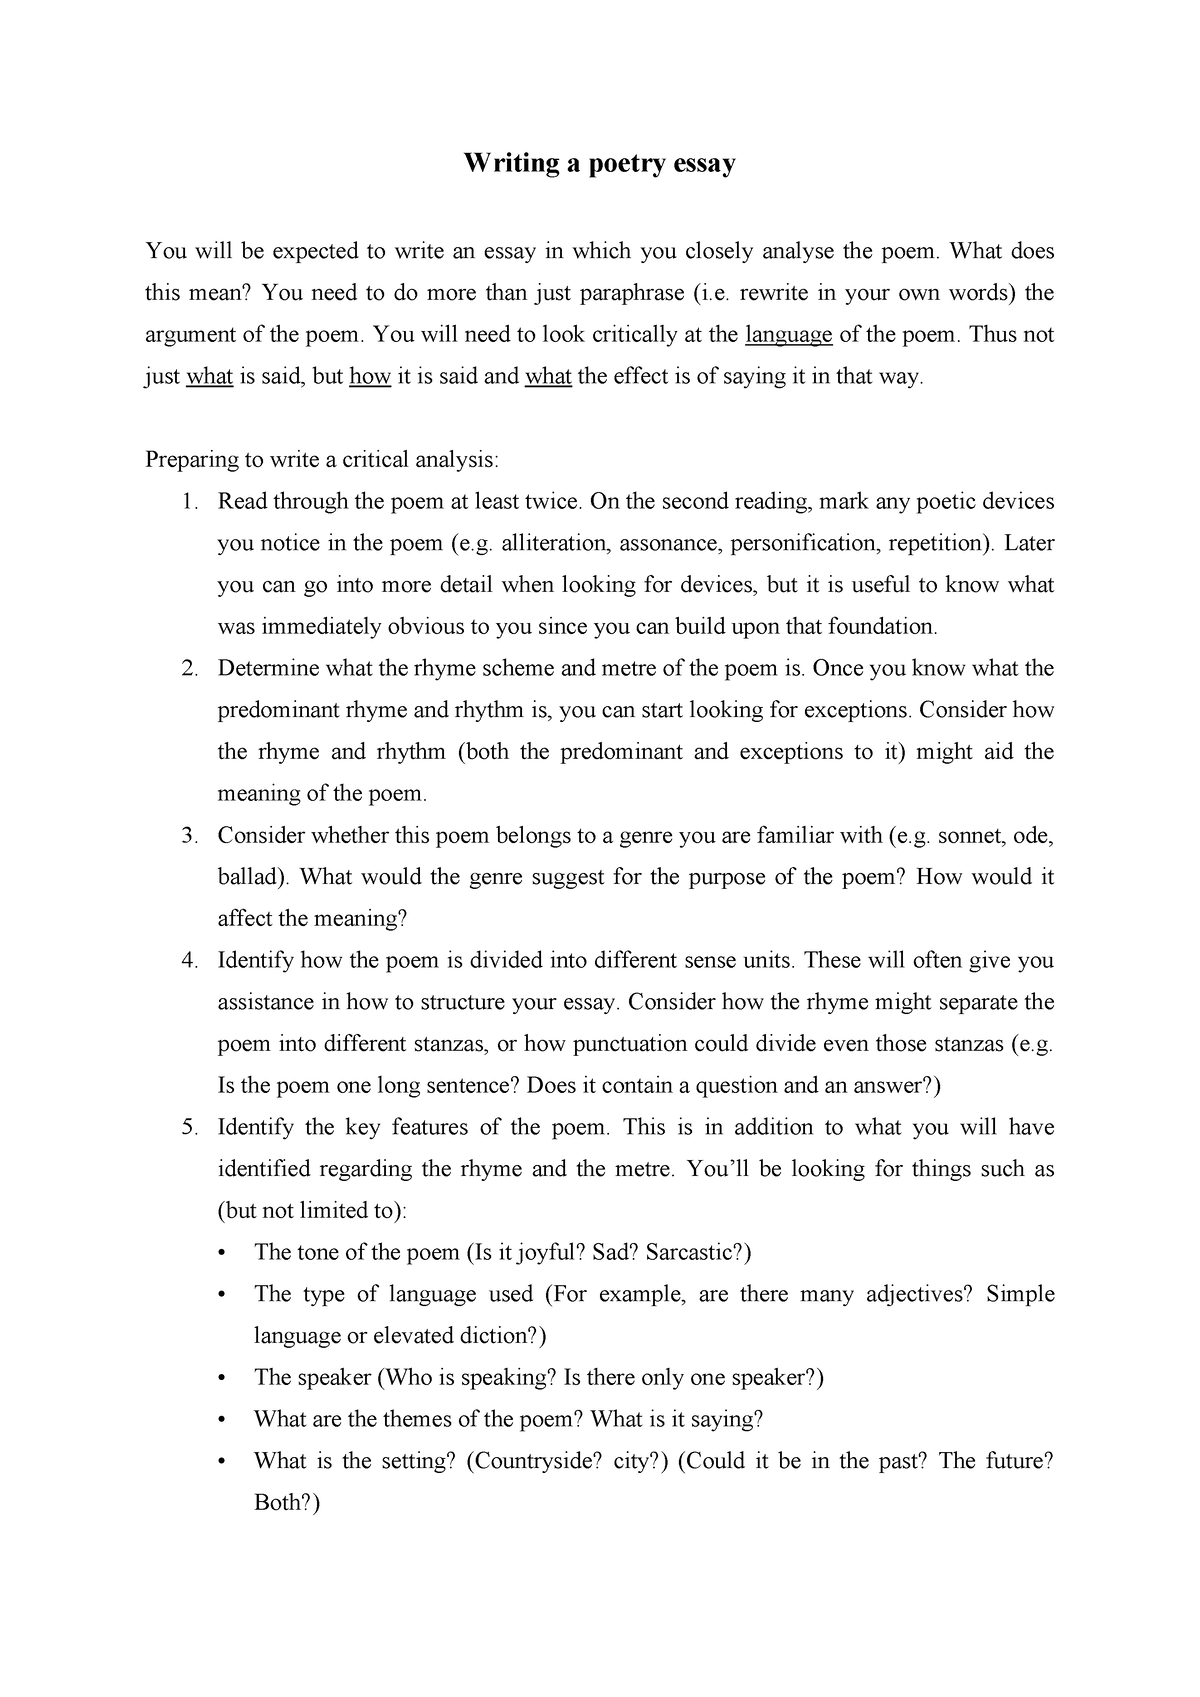 how to write a poetry essay pdf grade 12